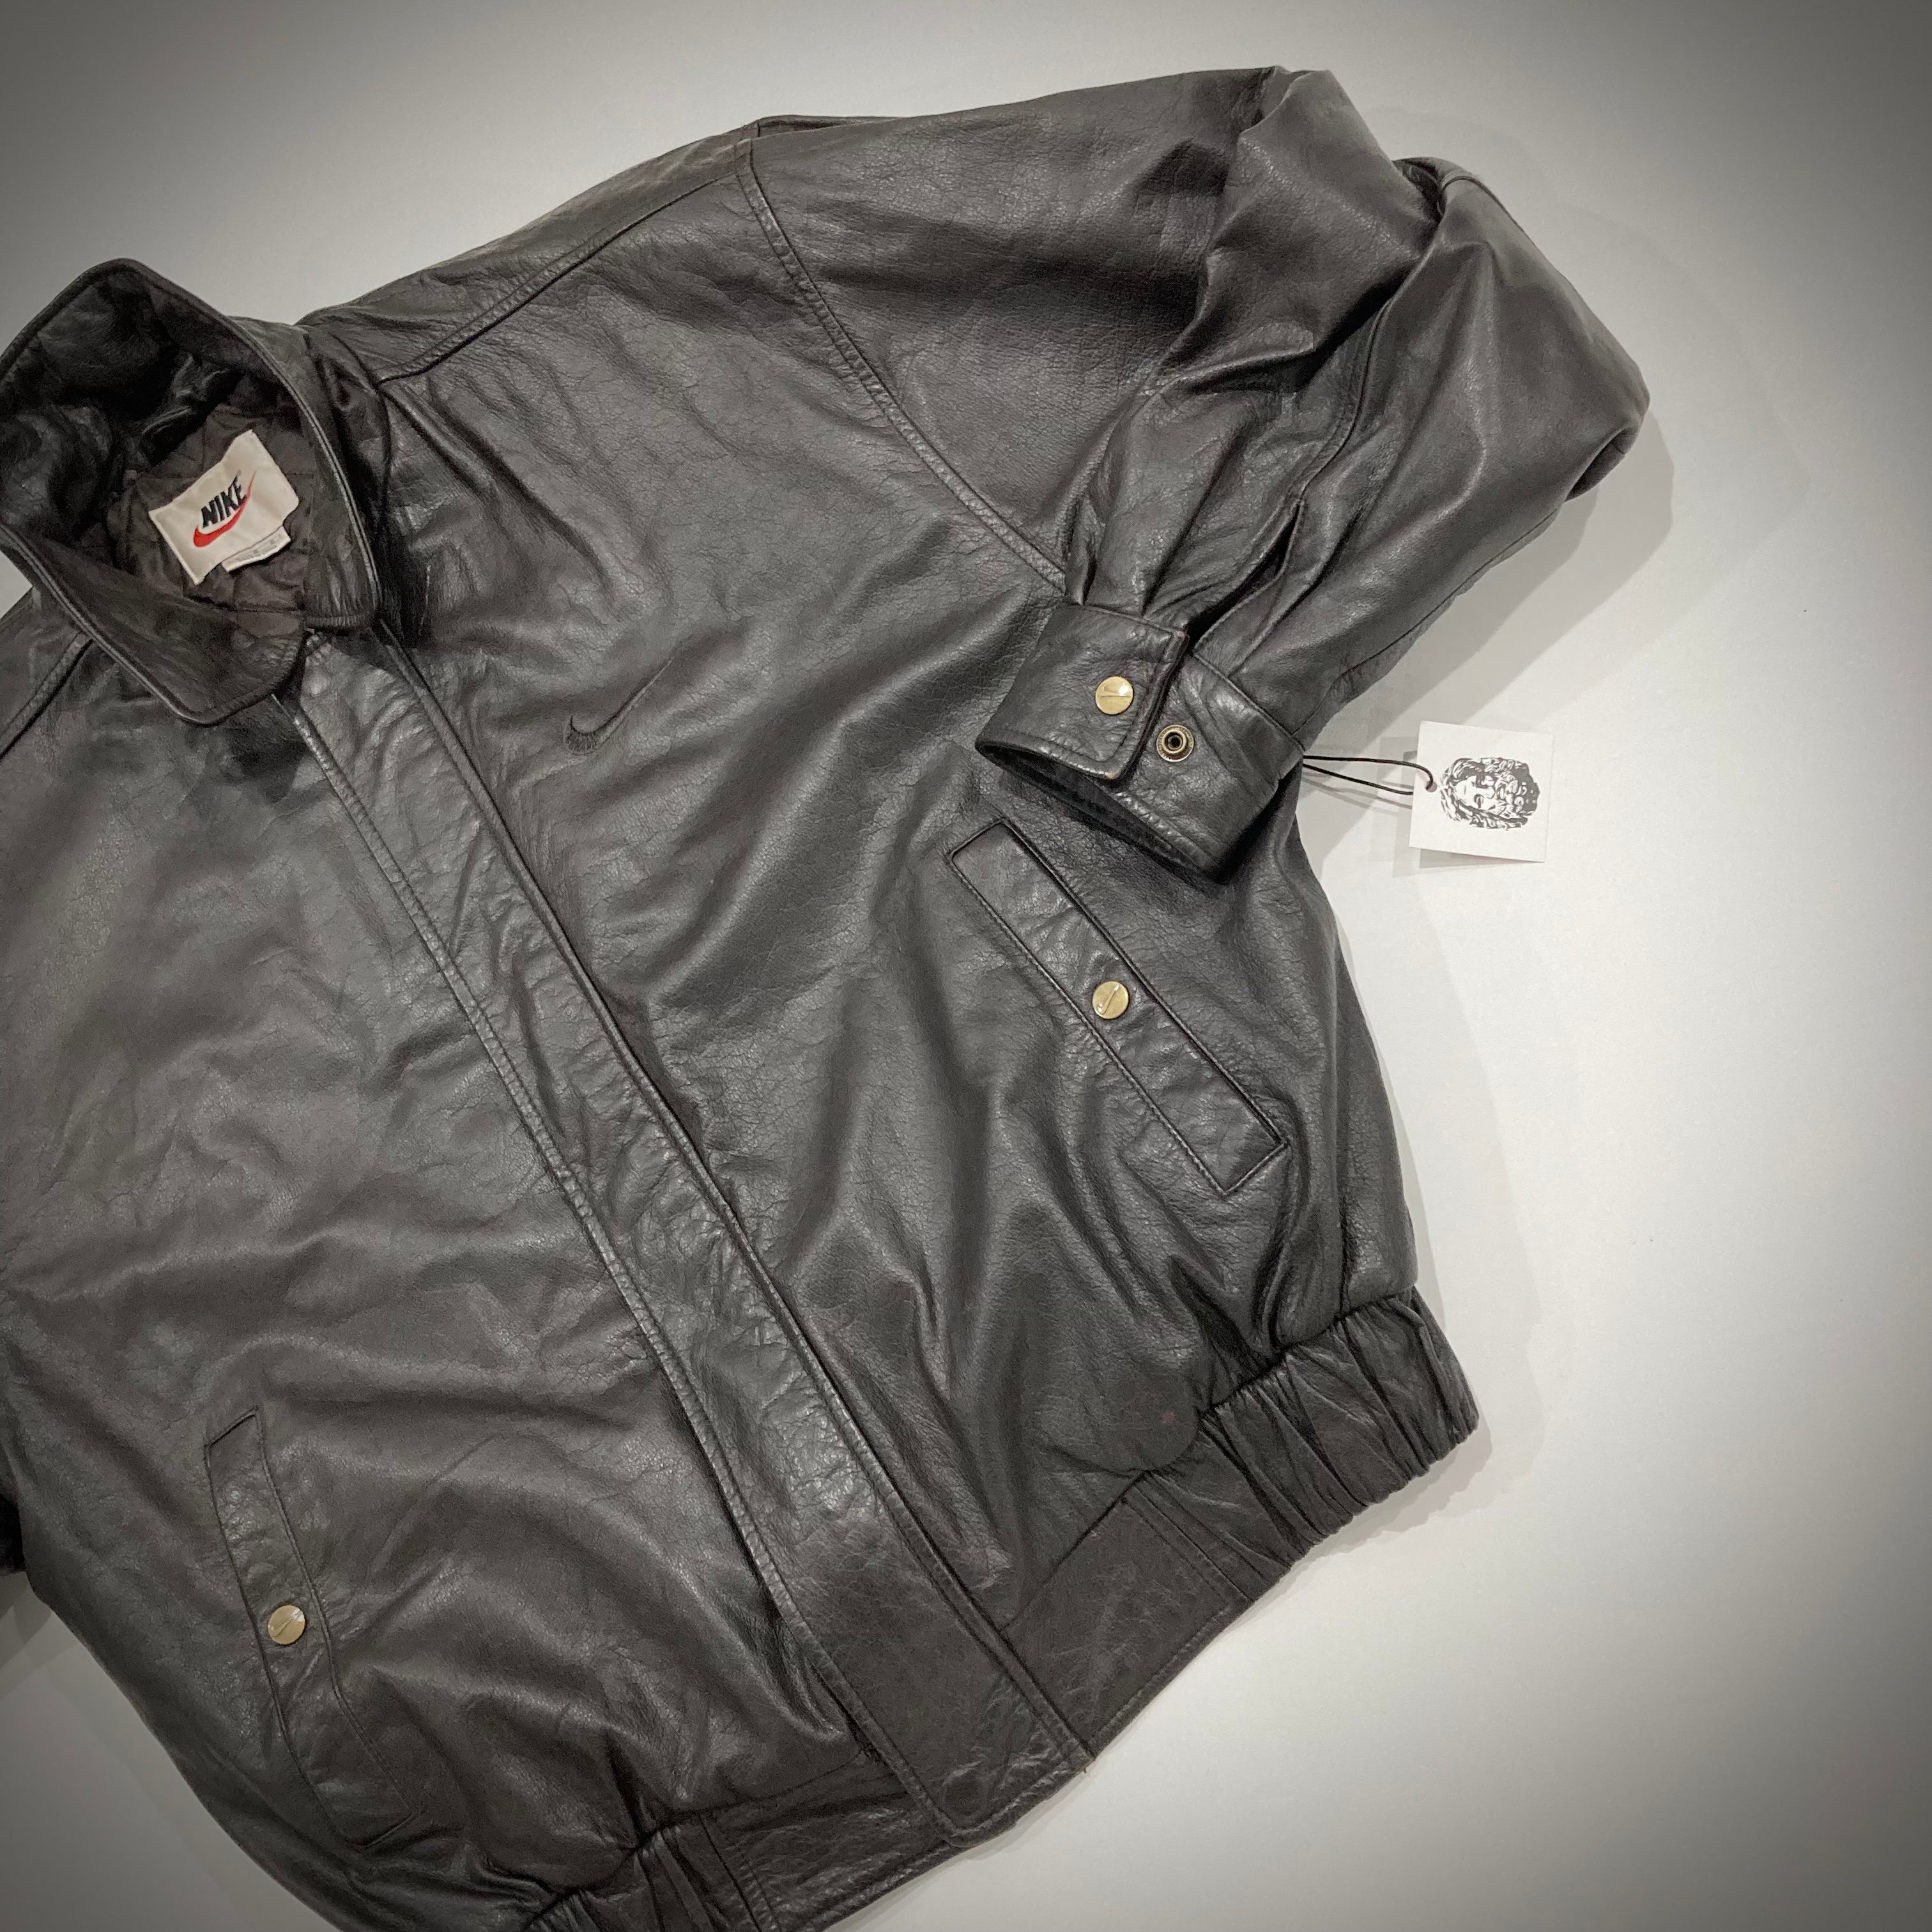 Vintage Nike Leather Bomber Jacket